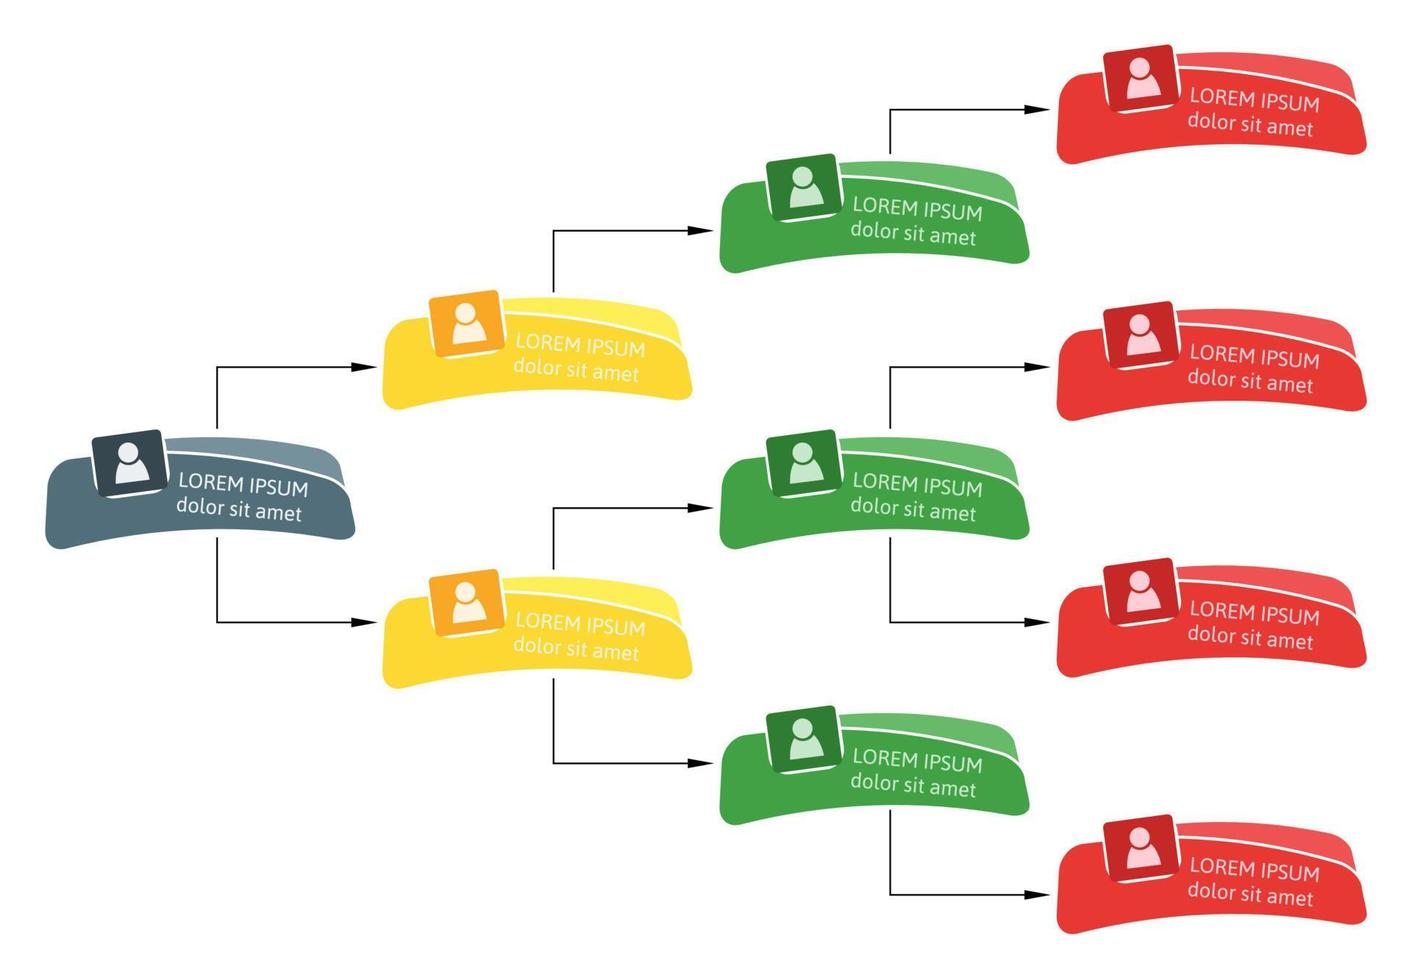 conceito de estrutura de negócios colorido, esquema de organograma corporativo com ícones de pessoas. ilustração vetorial. vetor